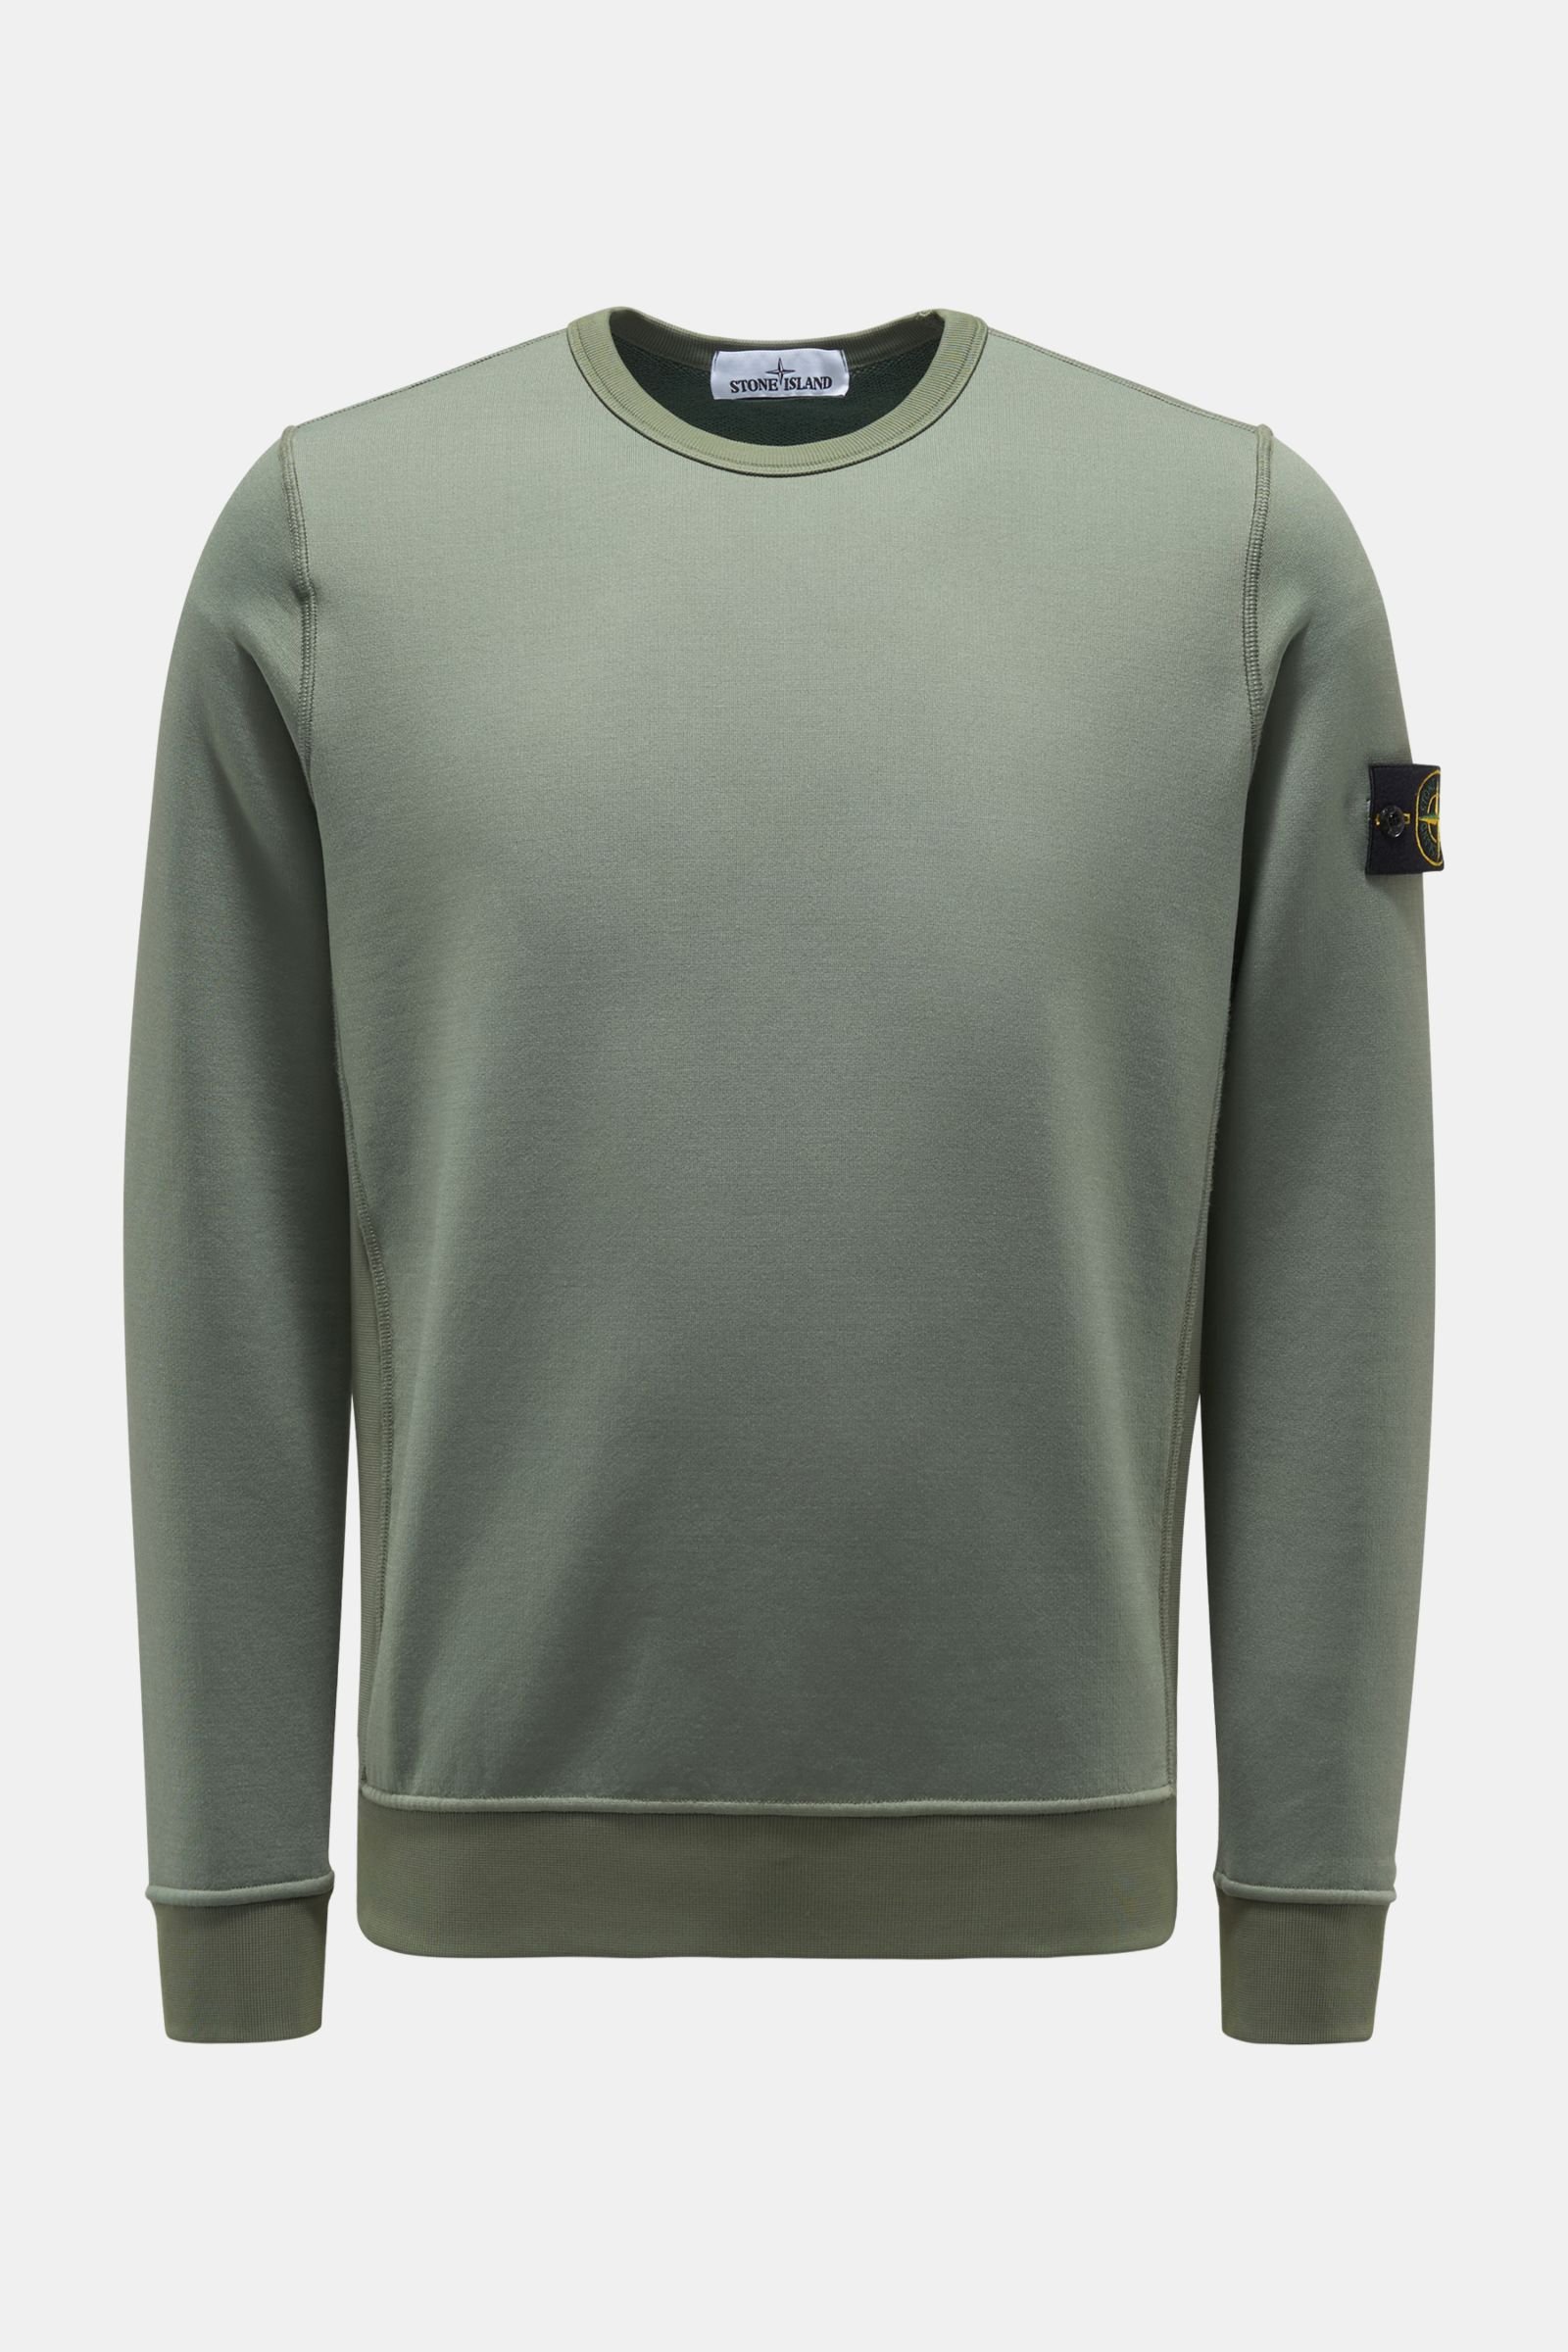 Rundhals-Sweatshirt graugrün